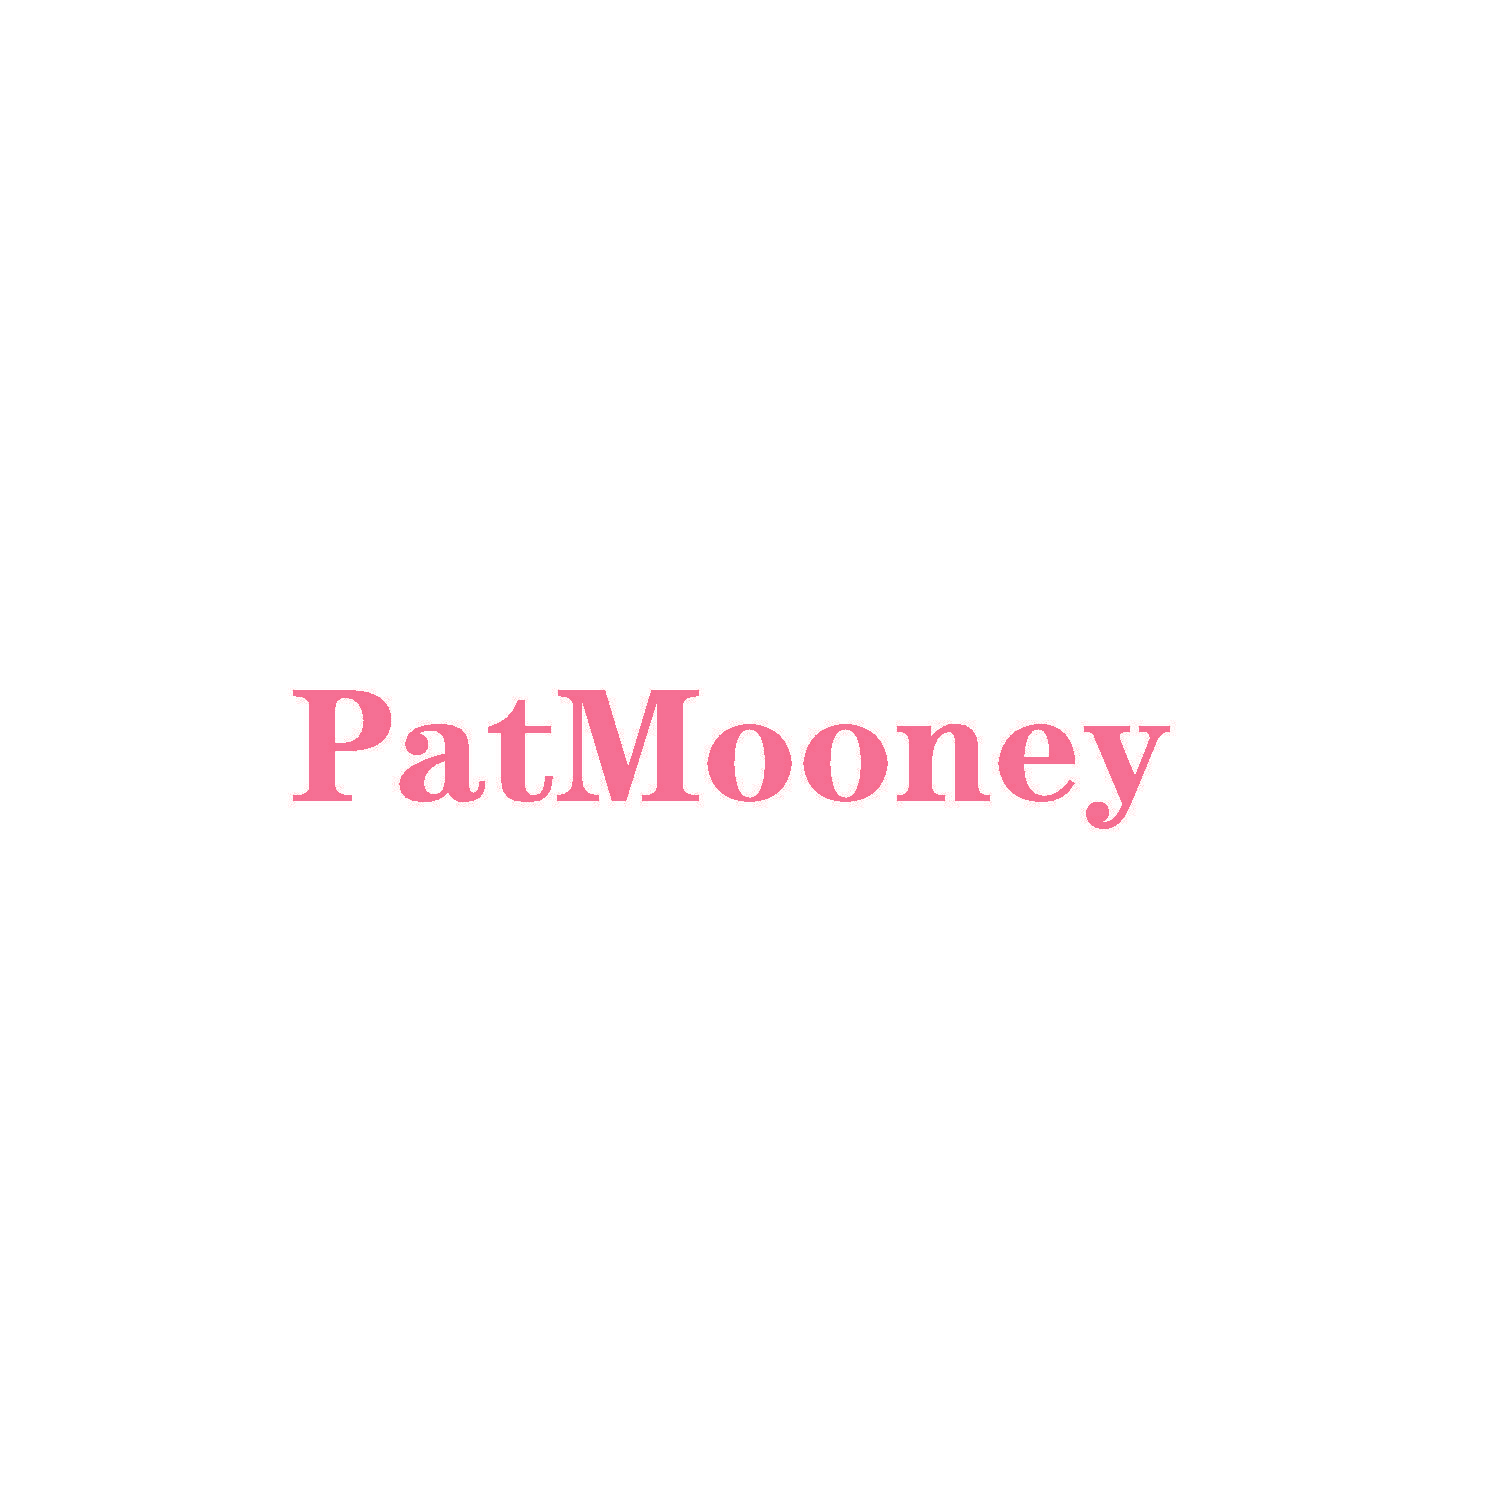 PatMooney